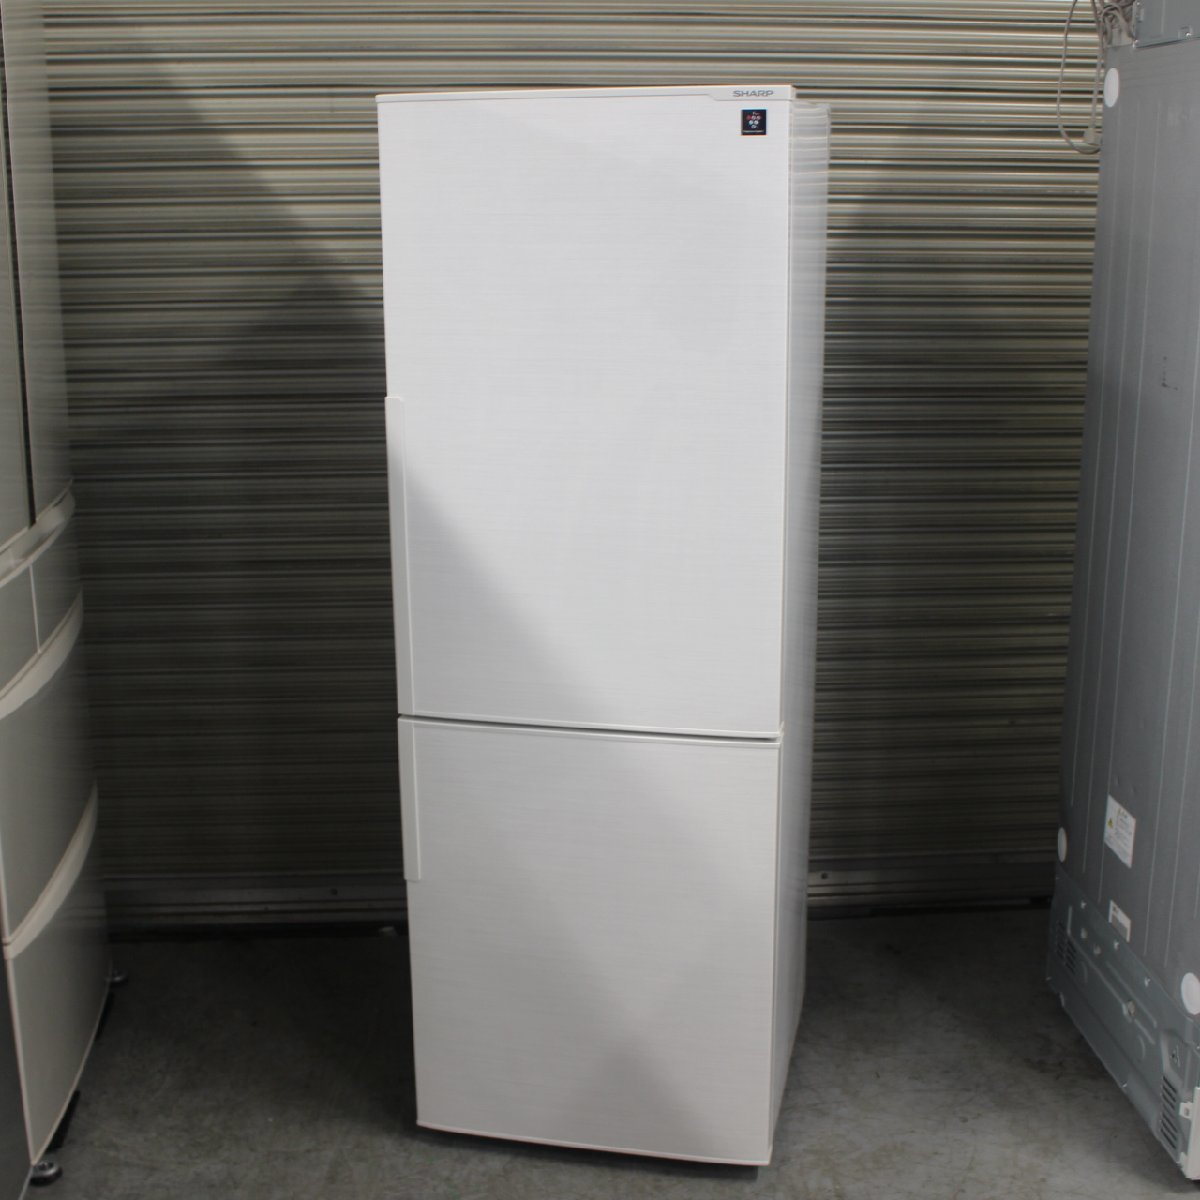 東京都杉並区にて シャープ 冷凍冷蔵庫 SJ-PD27D-W 2018年製 を出張買取させて頂きました。